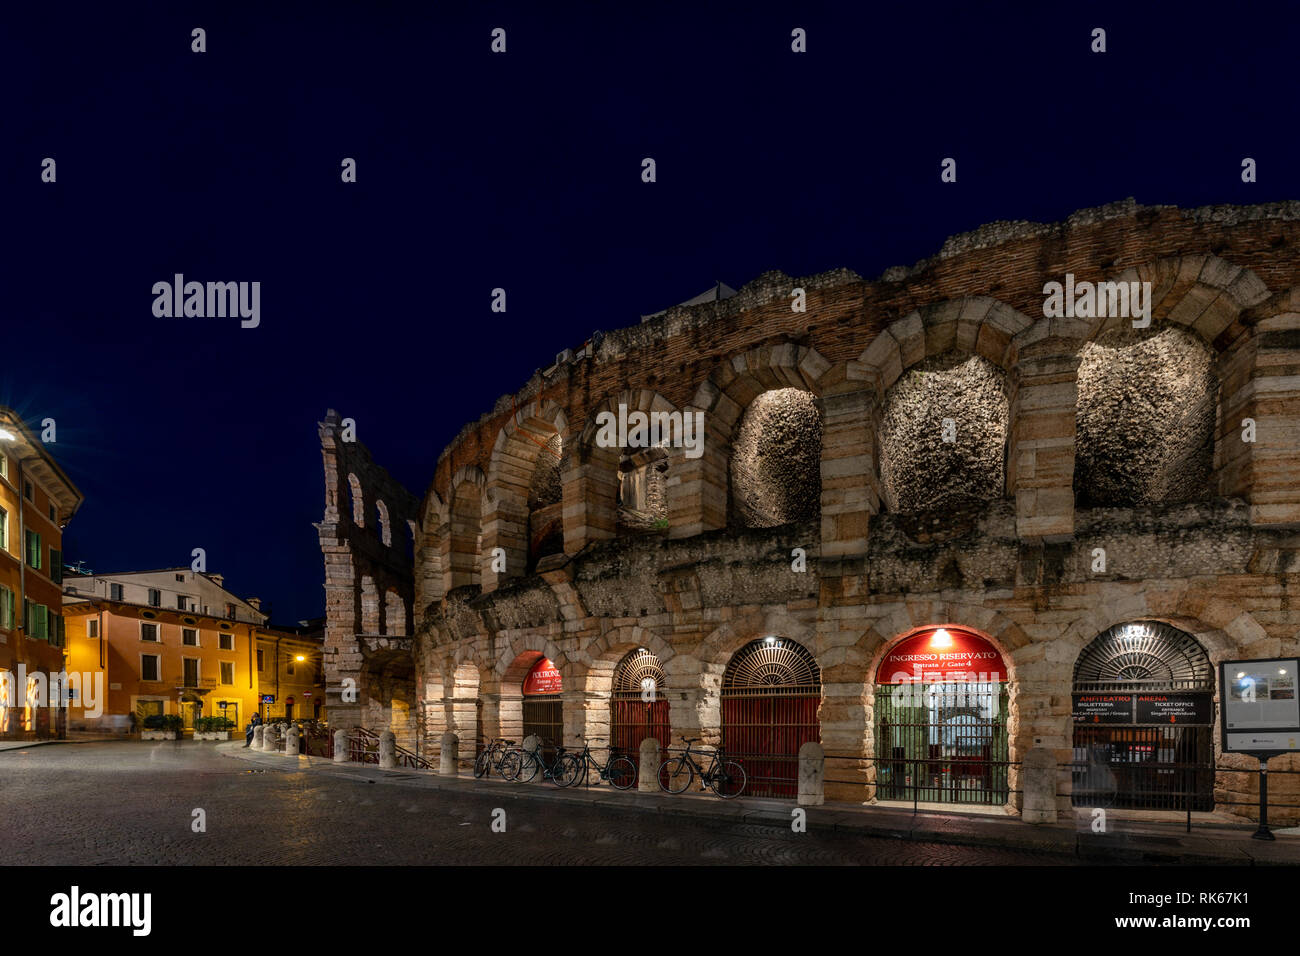 Vista notturna dell'Arena in Piazza Brà a Verona; Arena di Verona, Verona, Veneto, Italia Foto Stock